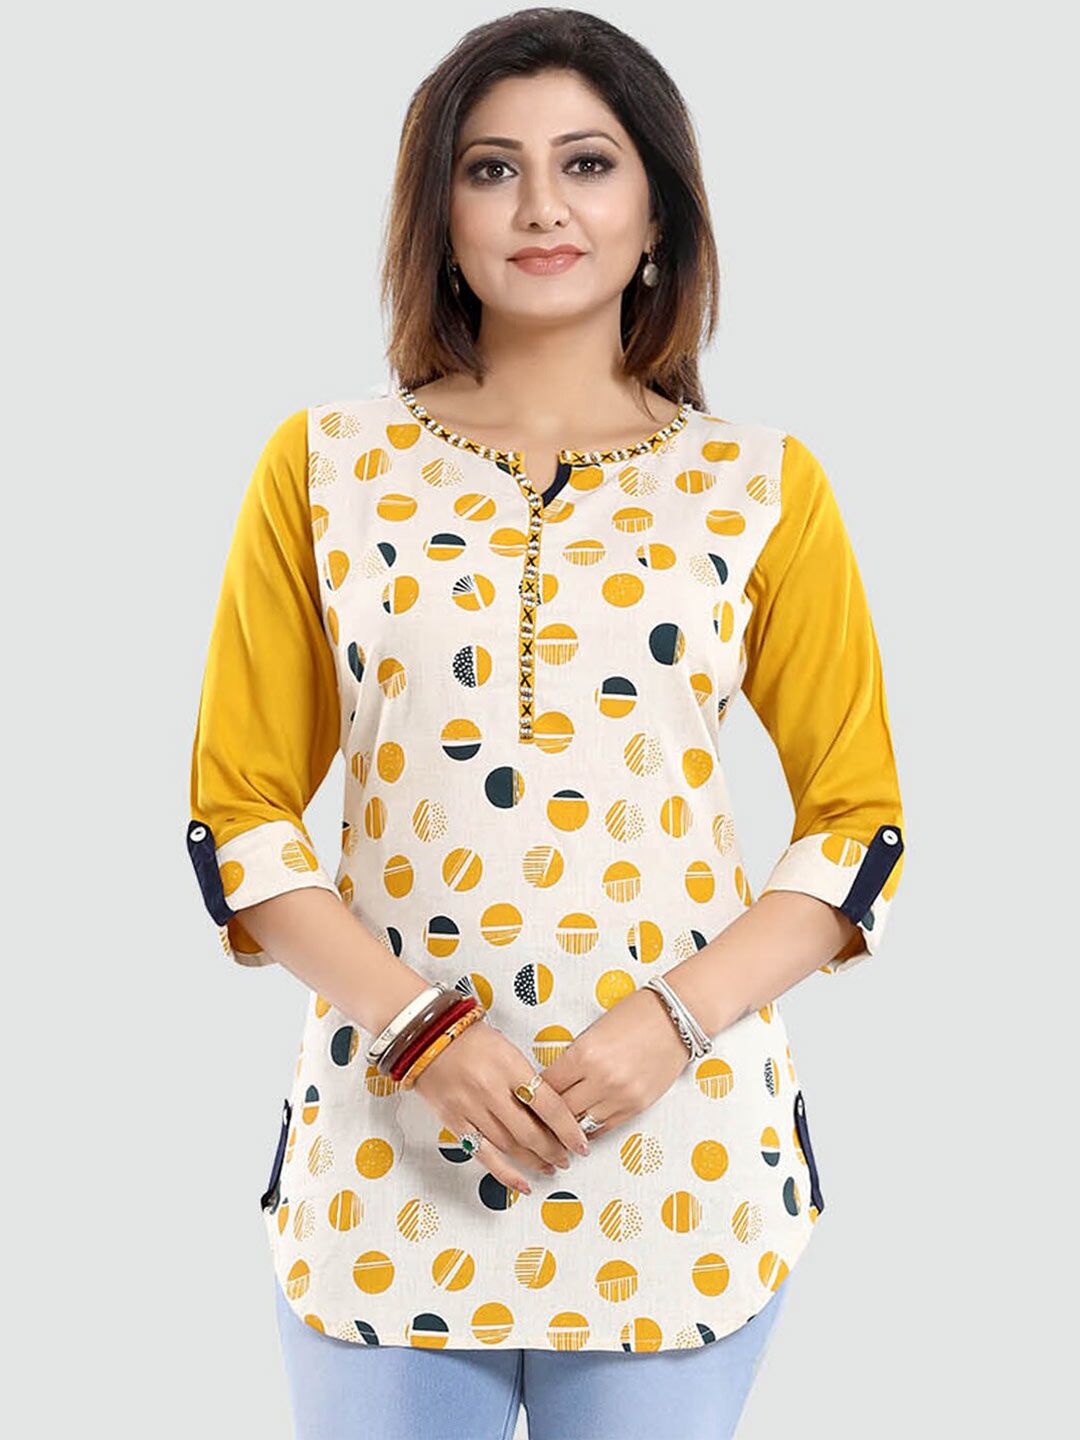 Saree Swarg Women Cream-Coloured & Yellow Geometric Printed Kurti Price in India